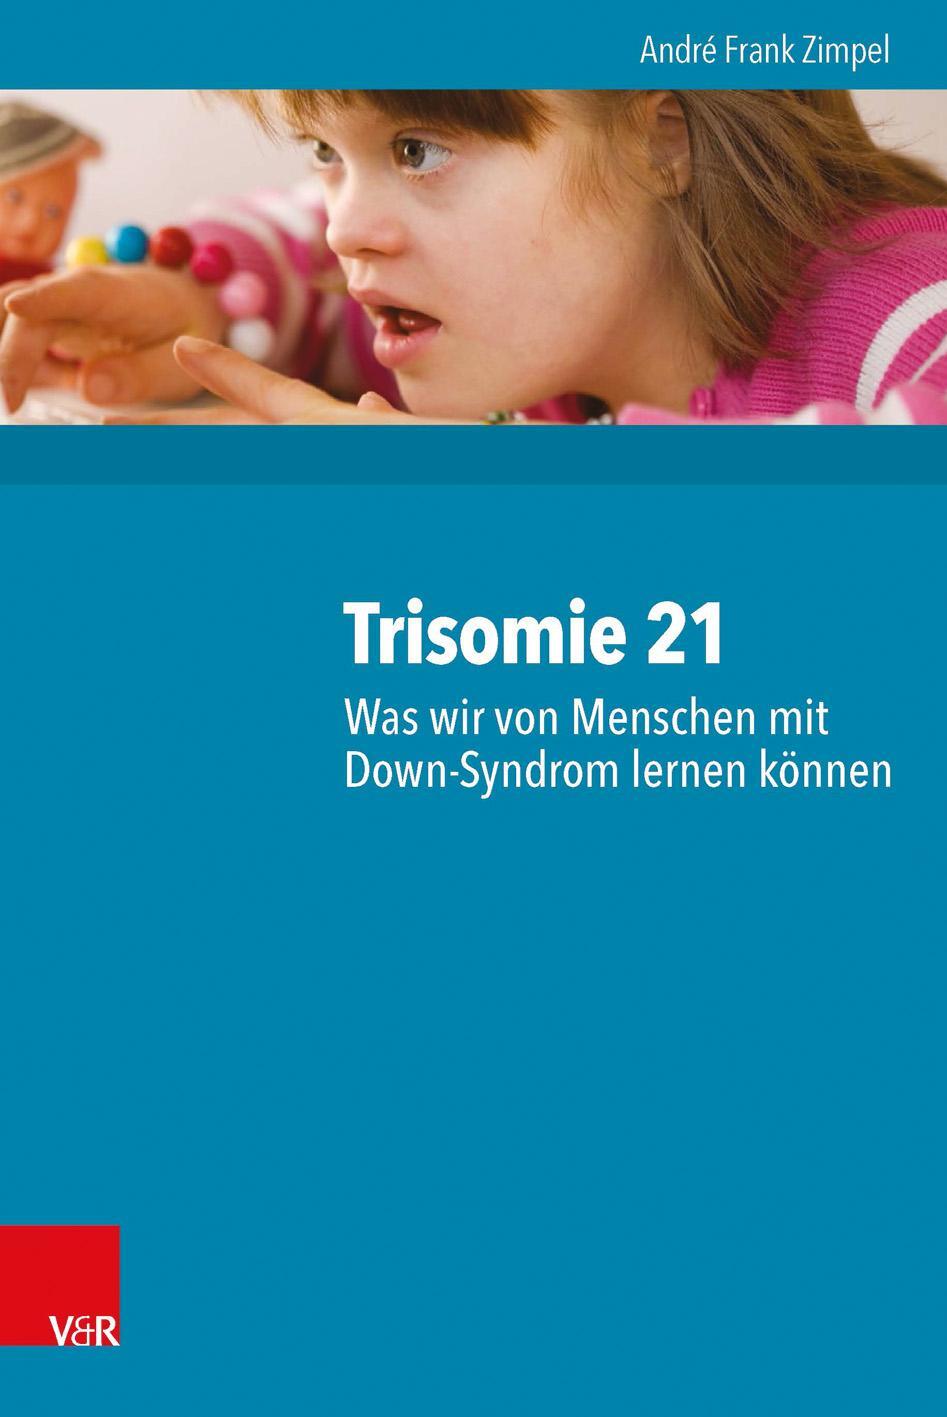 Trisomie 21 - Was wir von Menschen mit Down-Syndrom lernen können - Zimpel, André Frank